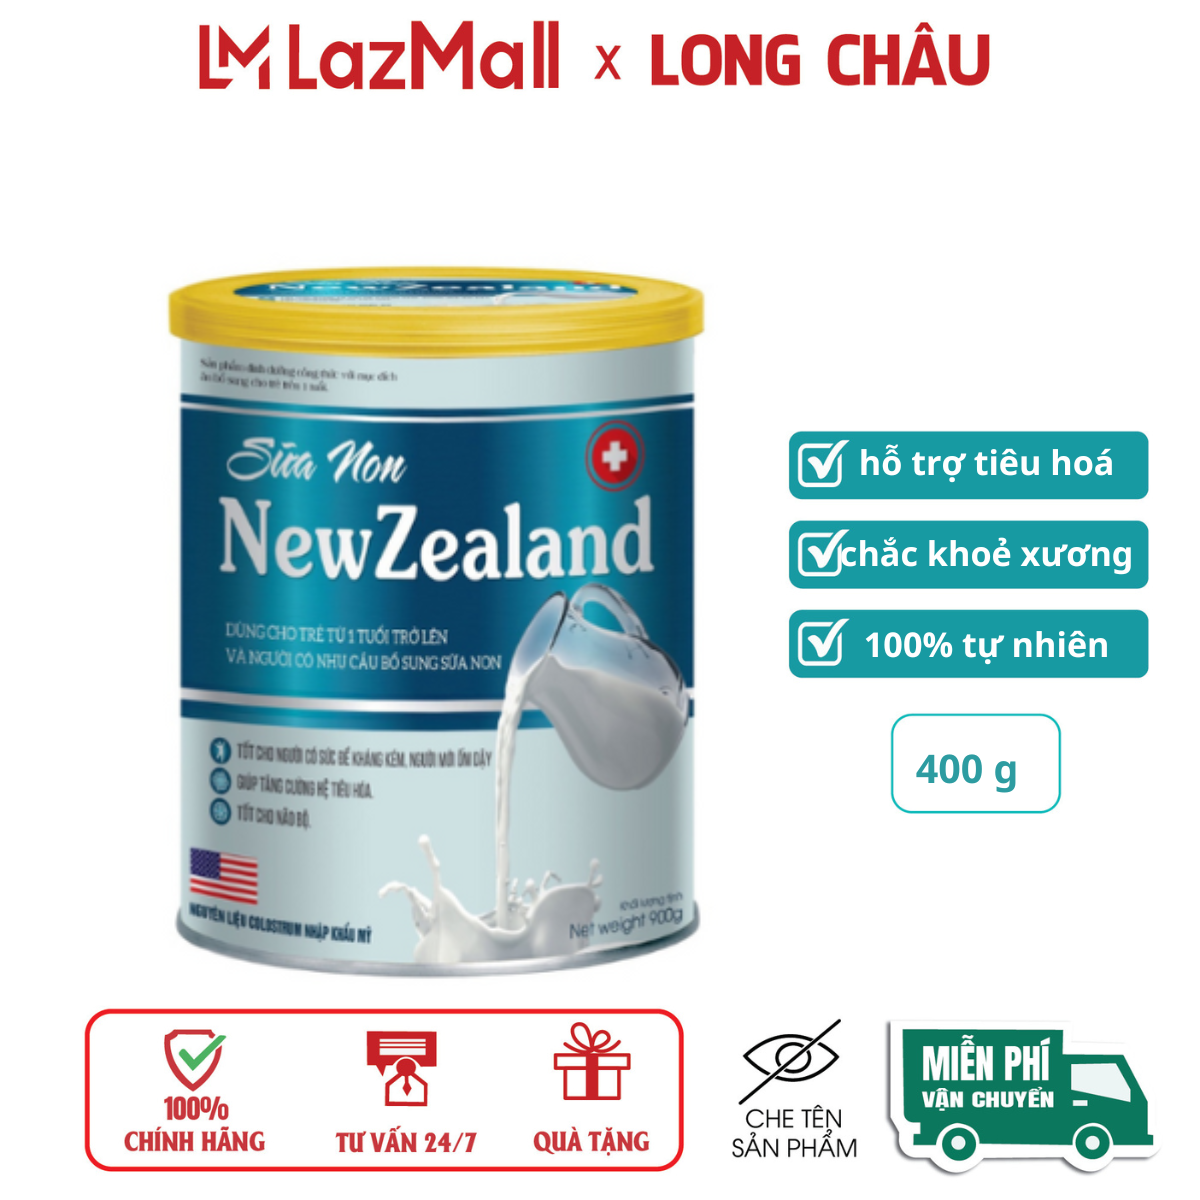 Sữa non Newzealand giúp tăng cường sức khỏe tăng sức đề kháng, tiêu hoá tốt